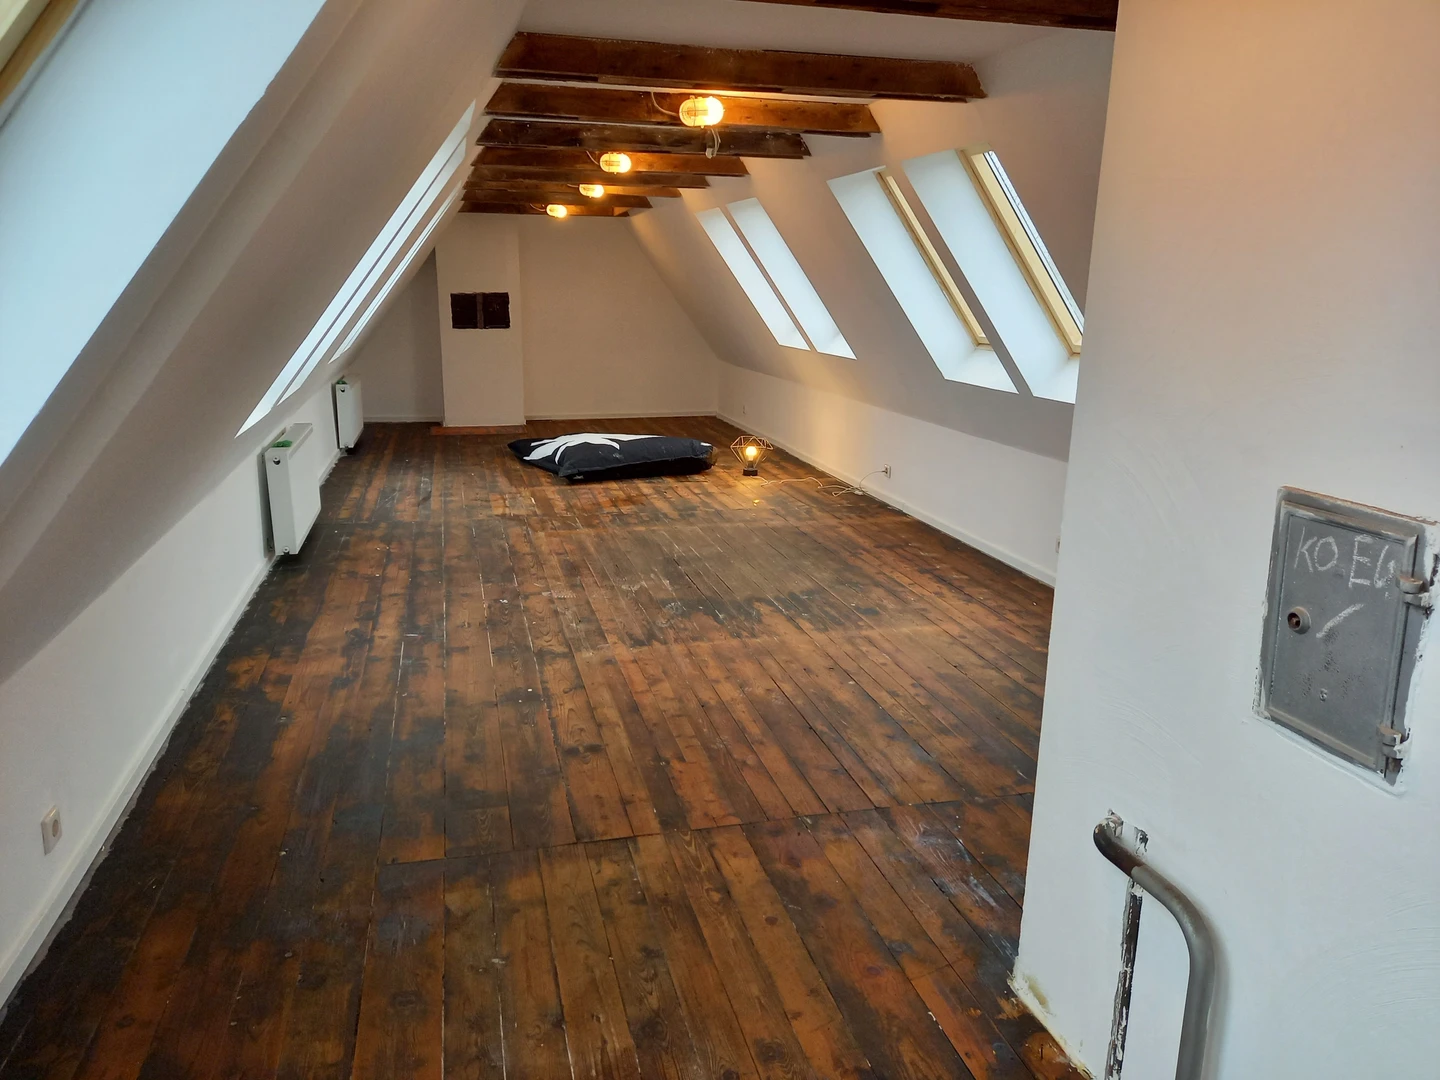 Nürnberg de çift kişilik yataklı kiralık oda